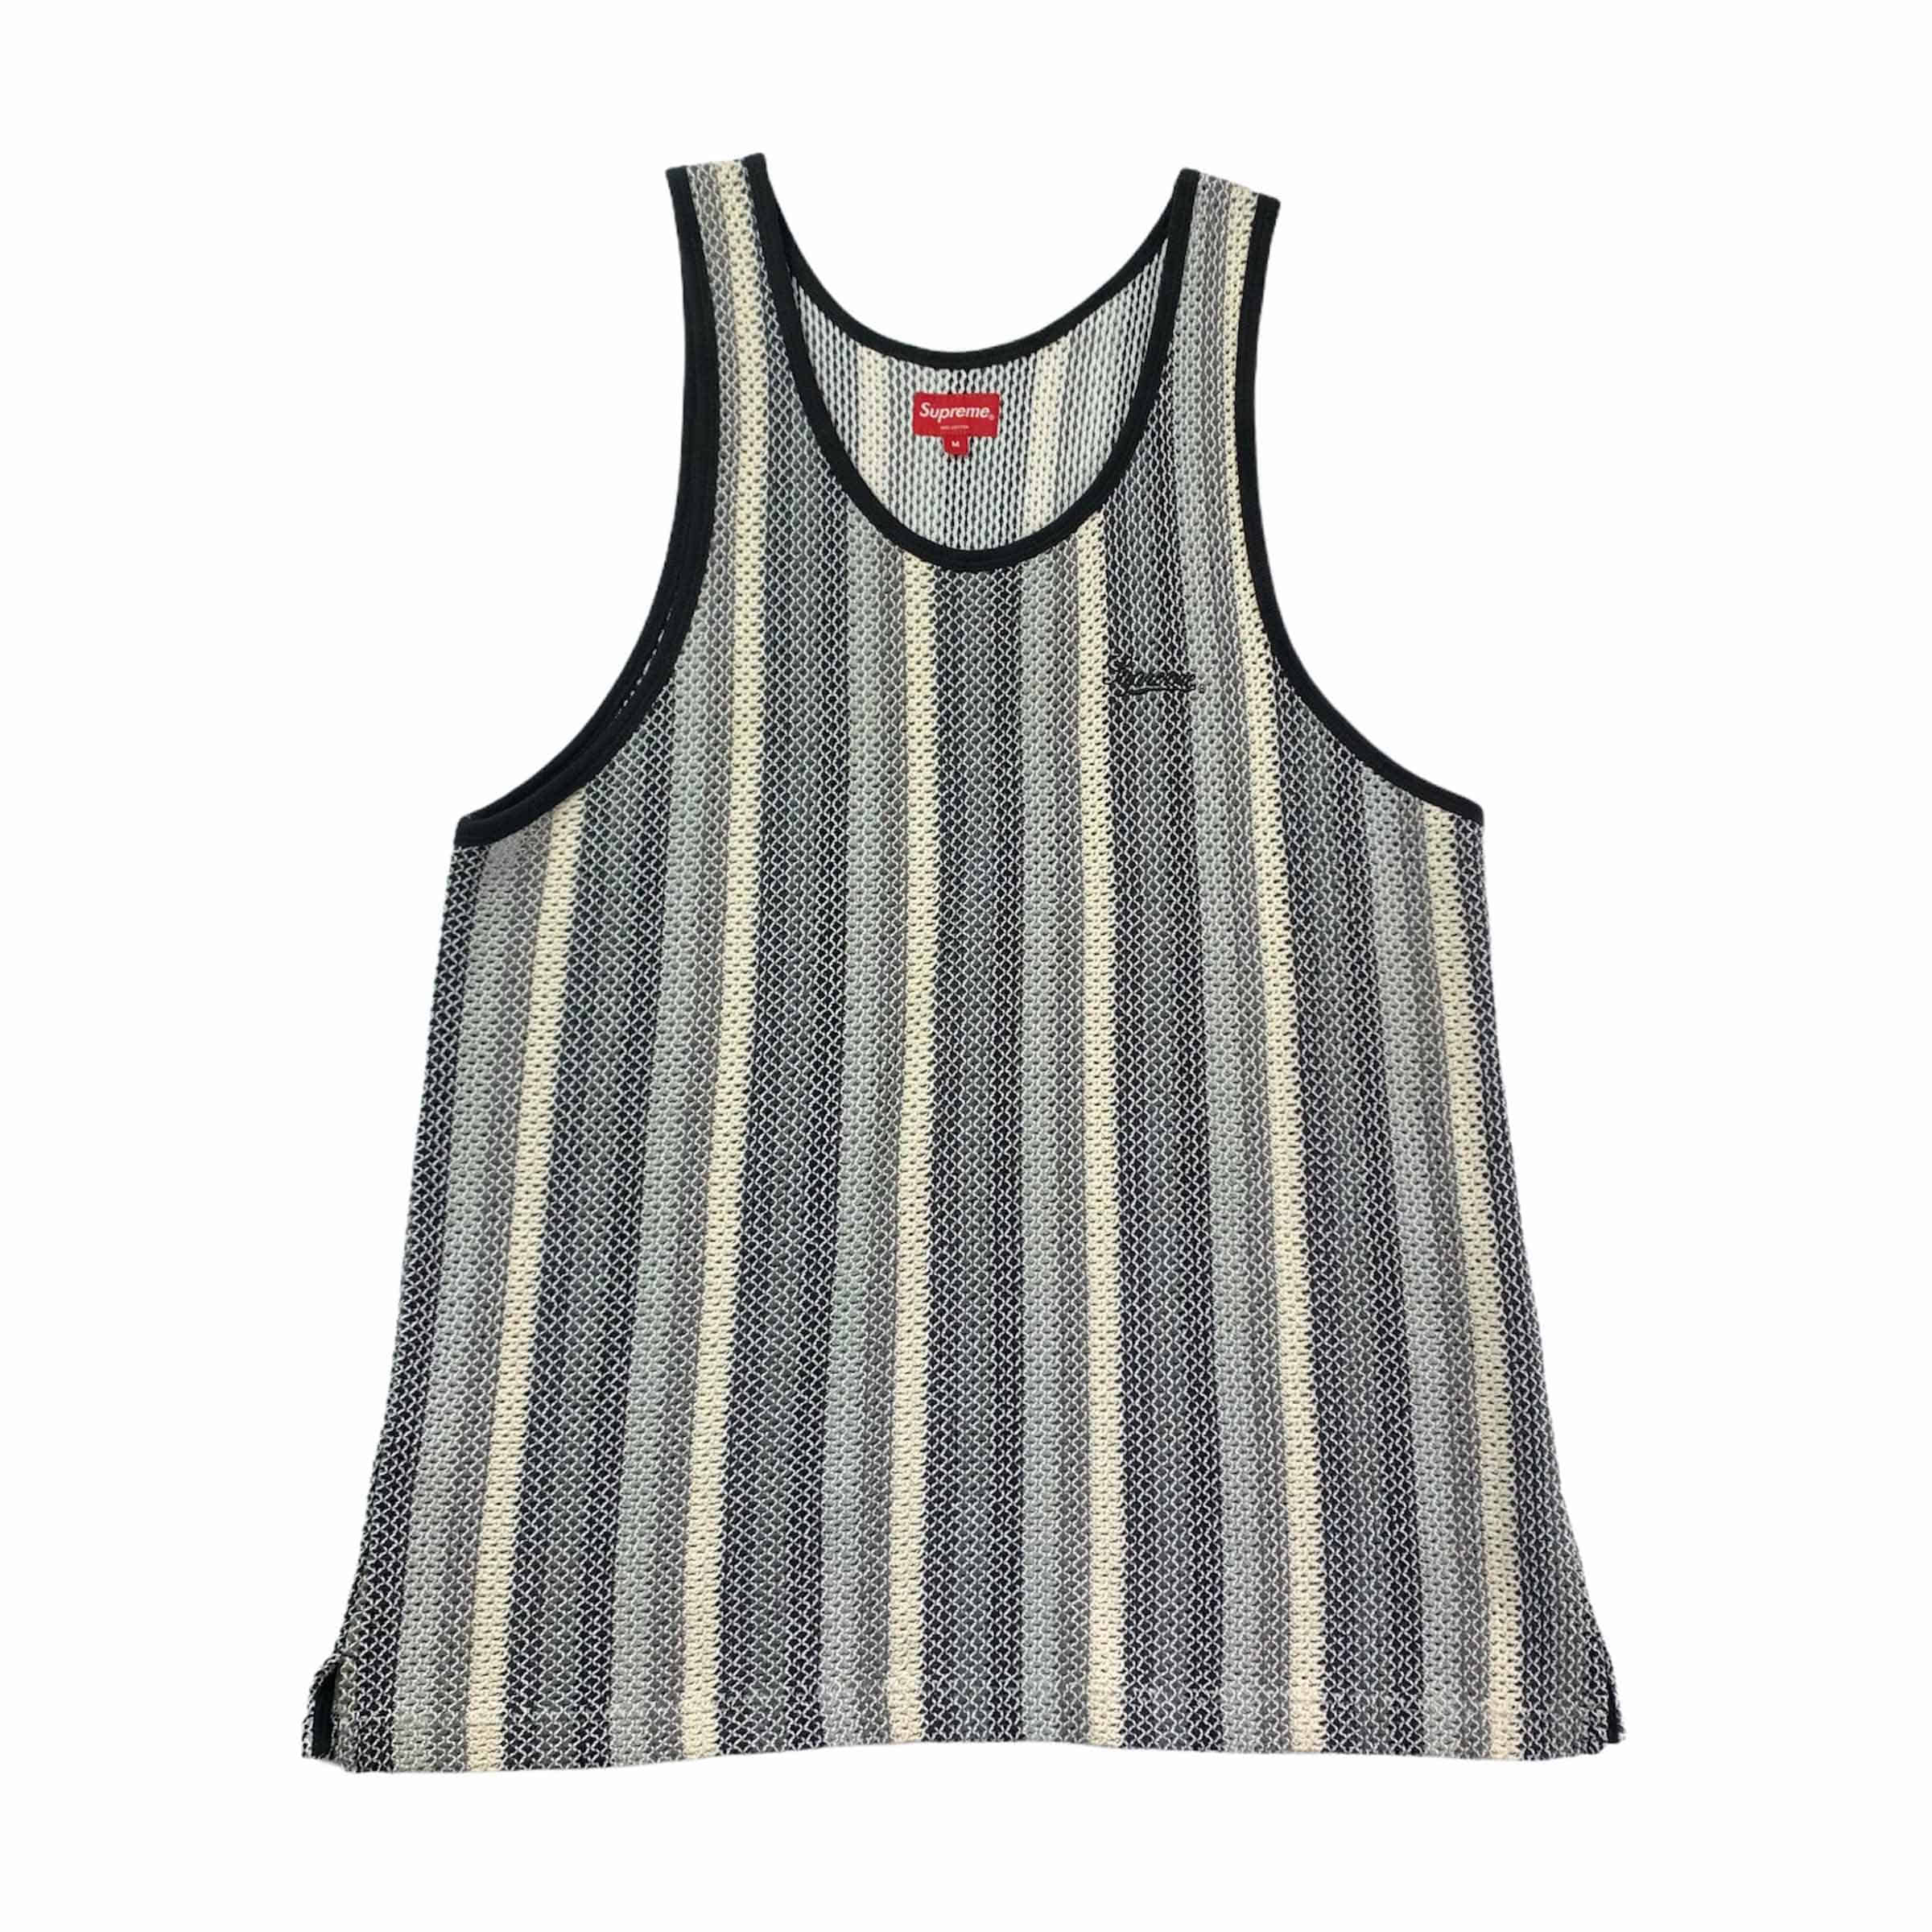 Supreme] Never Worn Supreme Knit Stripe Tank Top Black - Size L